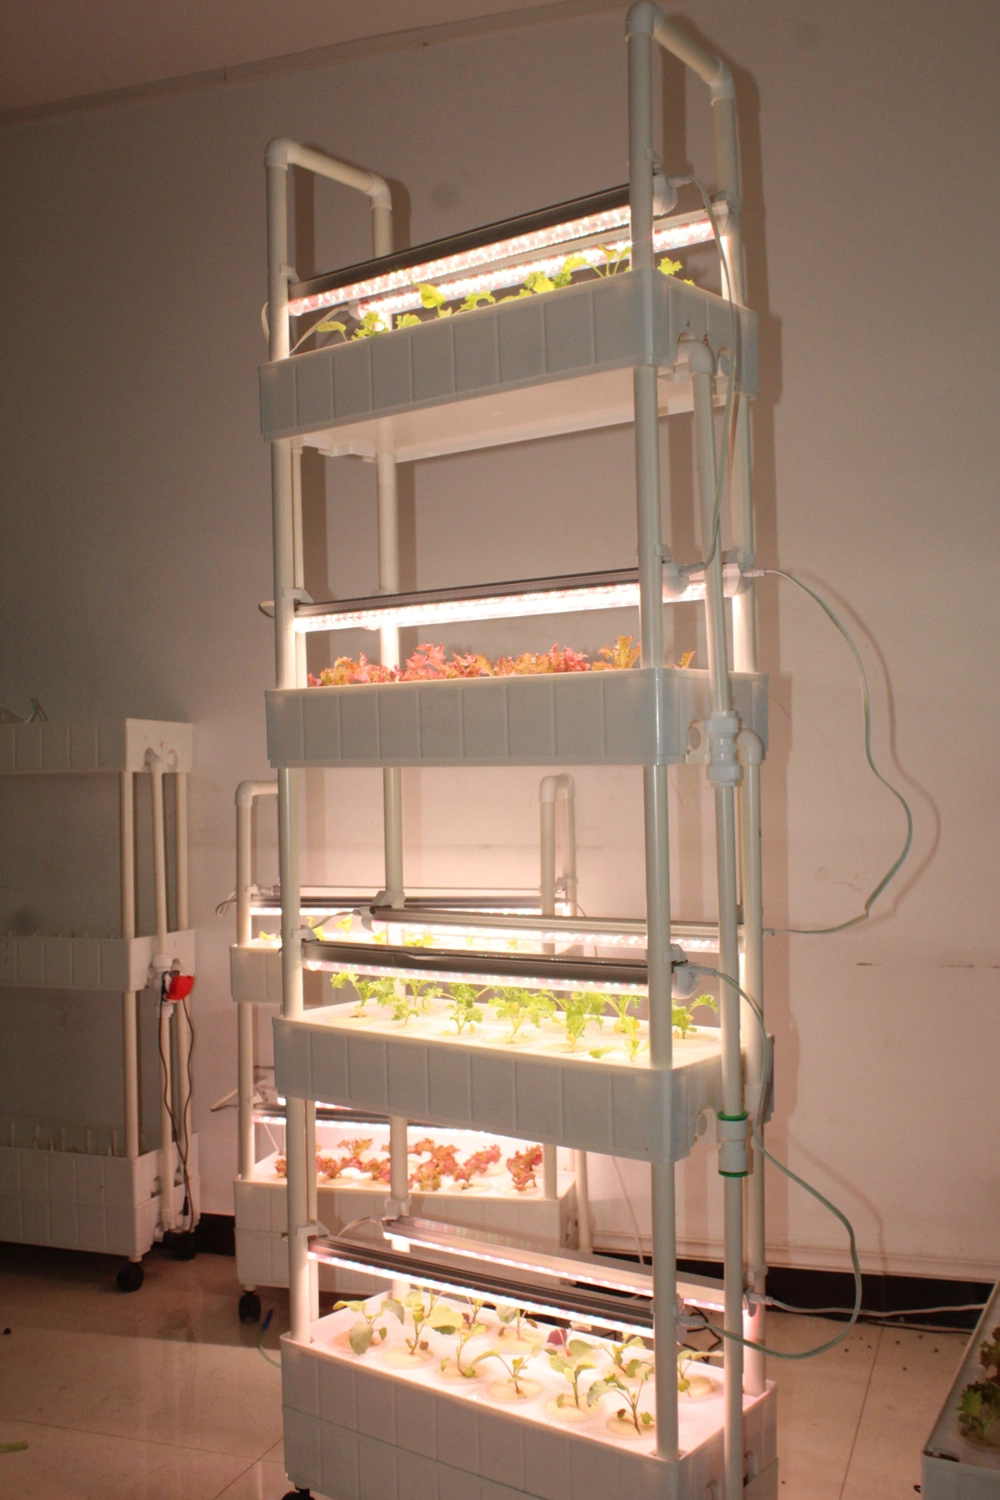 Smart Herb Vegetable Indoor Garden Hydroponics System Kitchen Appliance